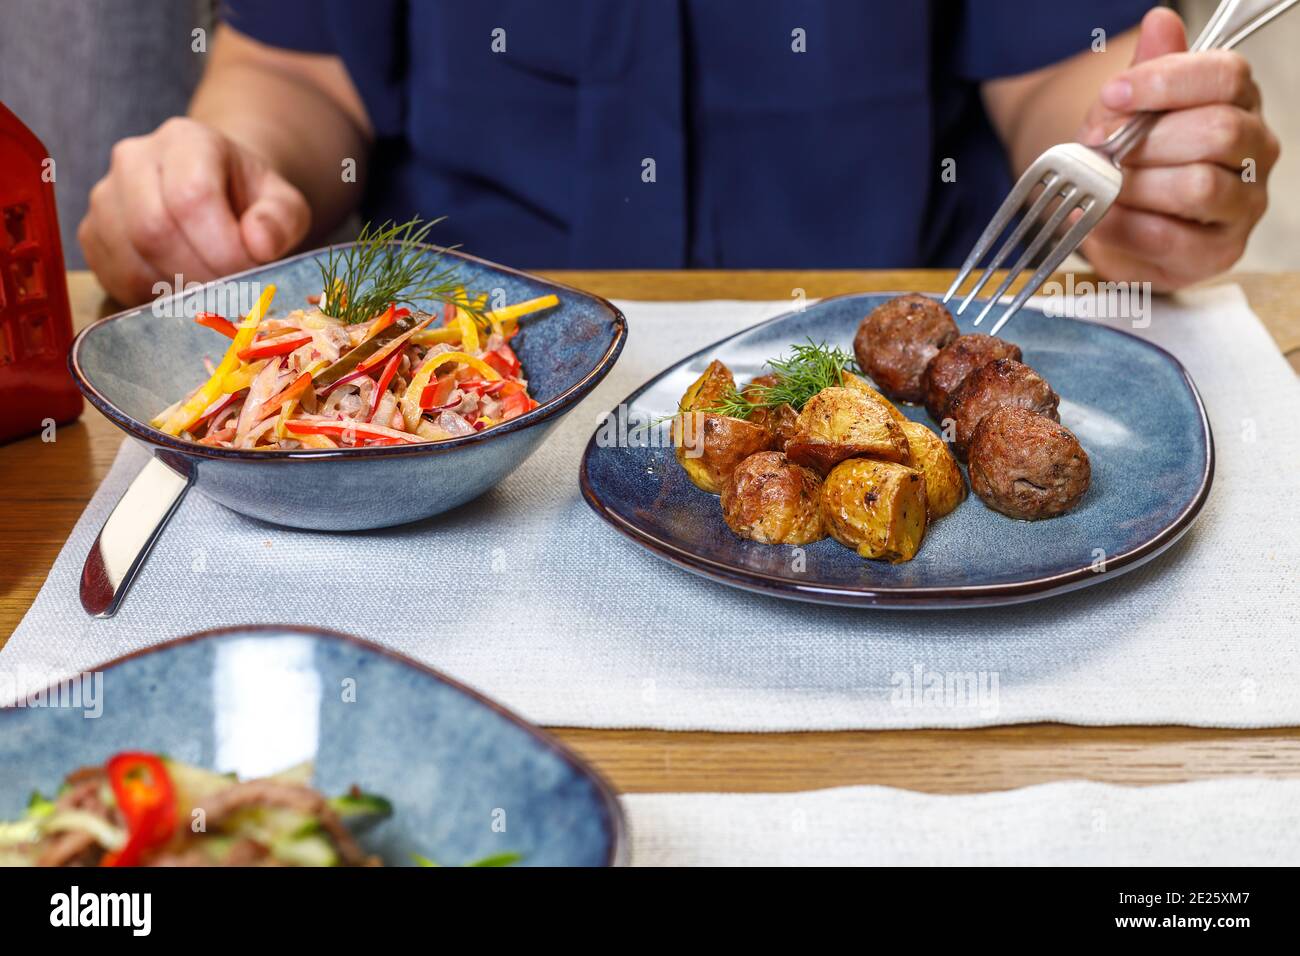 Un fragment de la table dans un restaurant ou un café. Salade, premier et deuxième plats. Le concept du déjeuner d'affaires. Banque D'Images